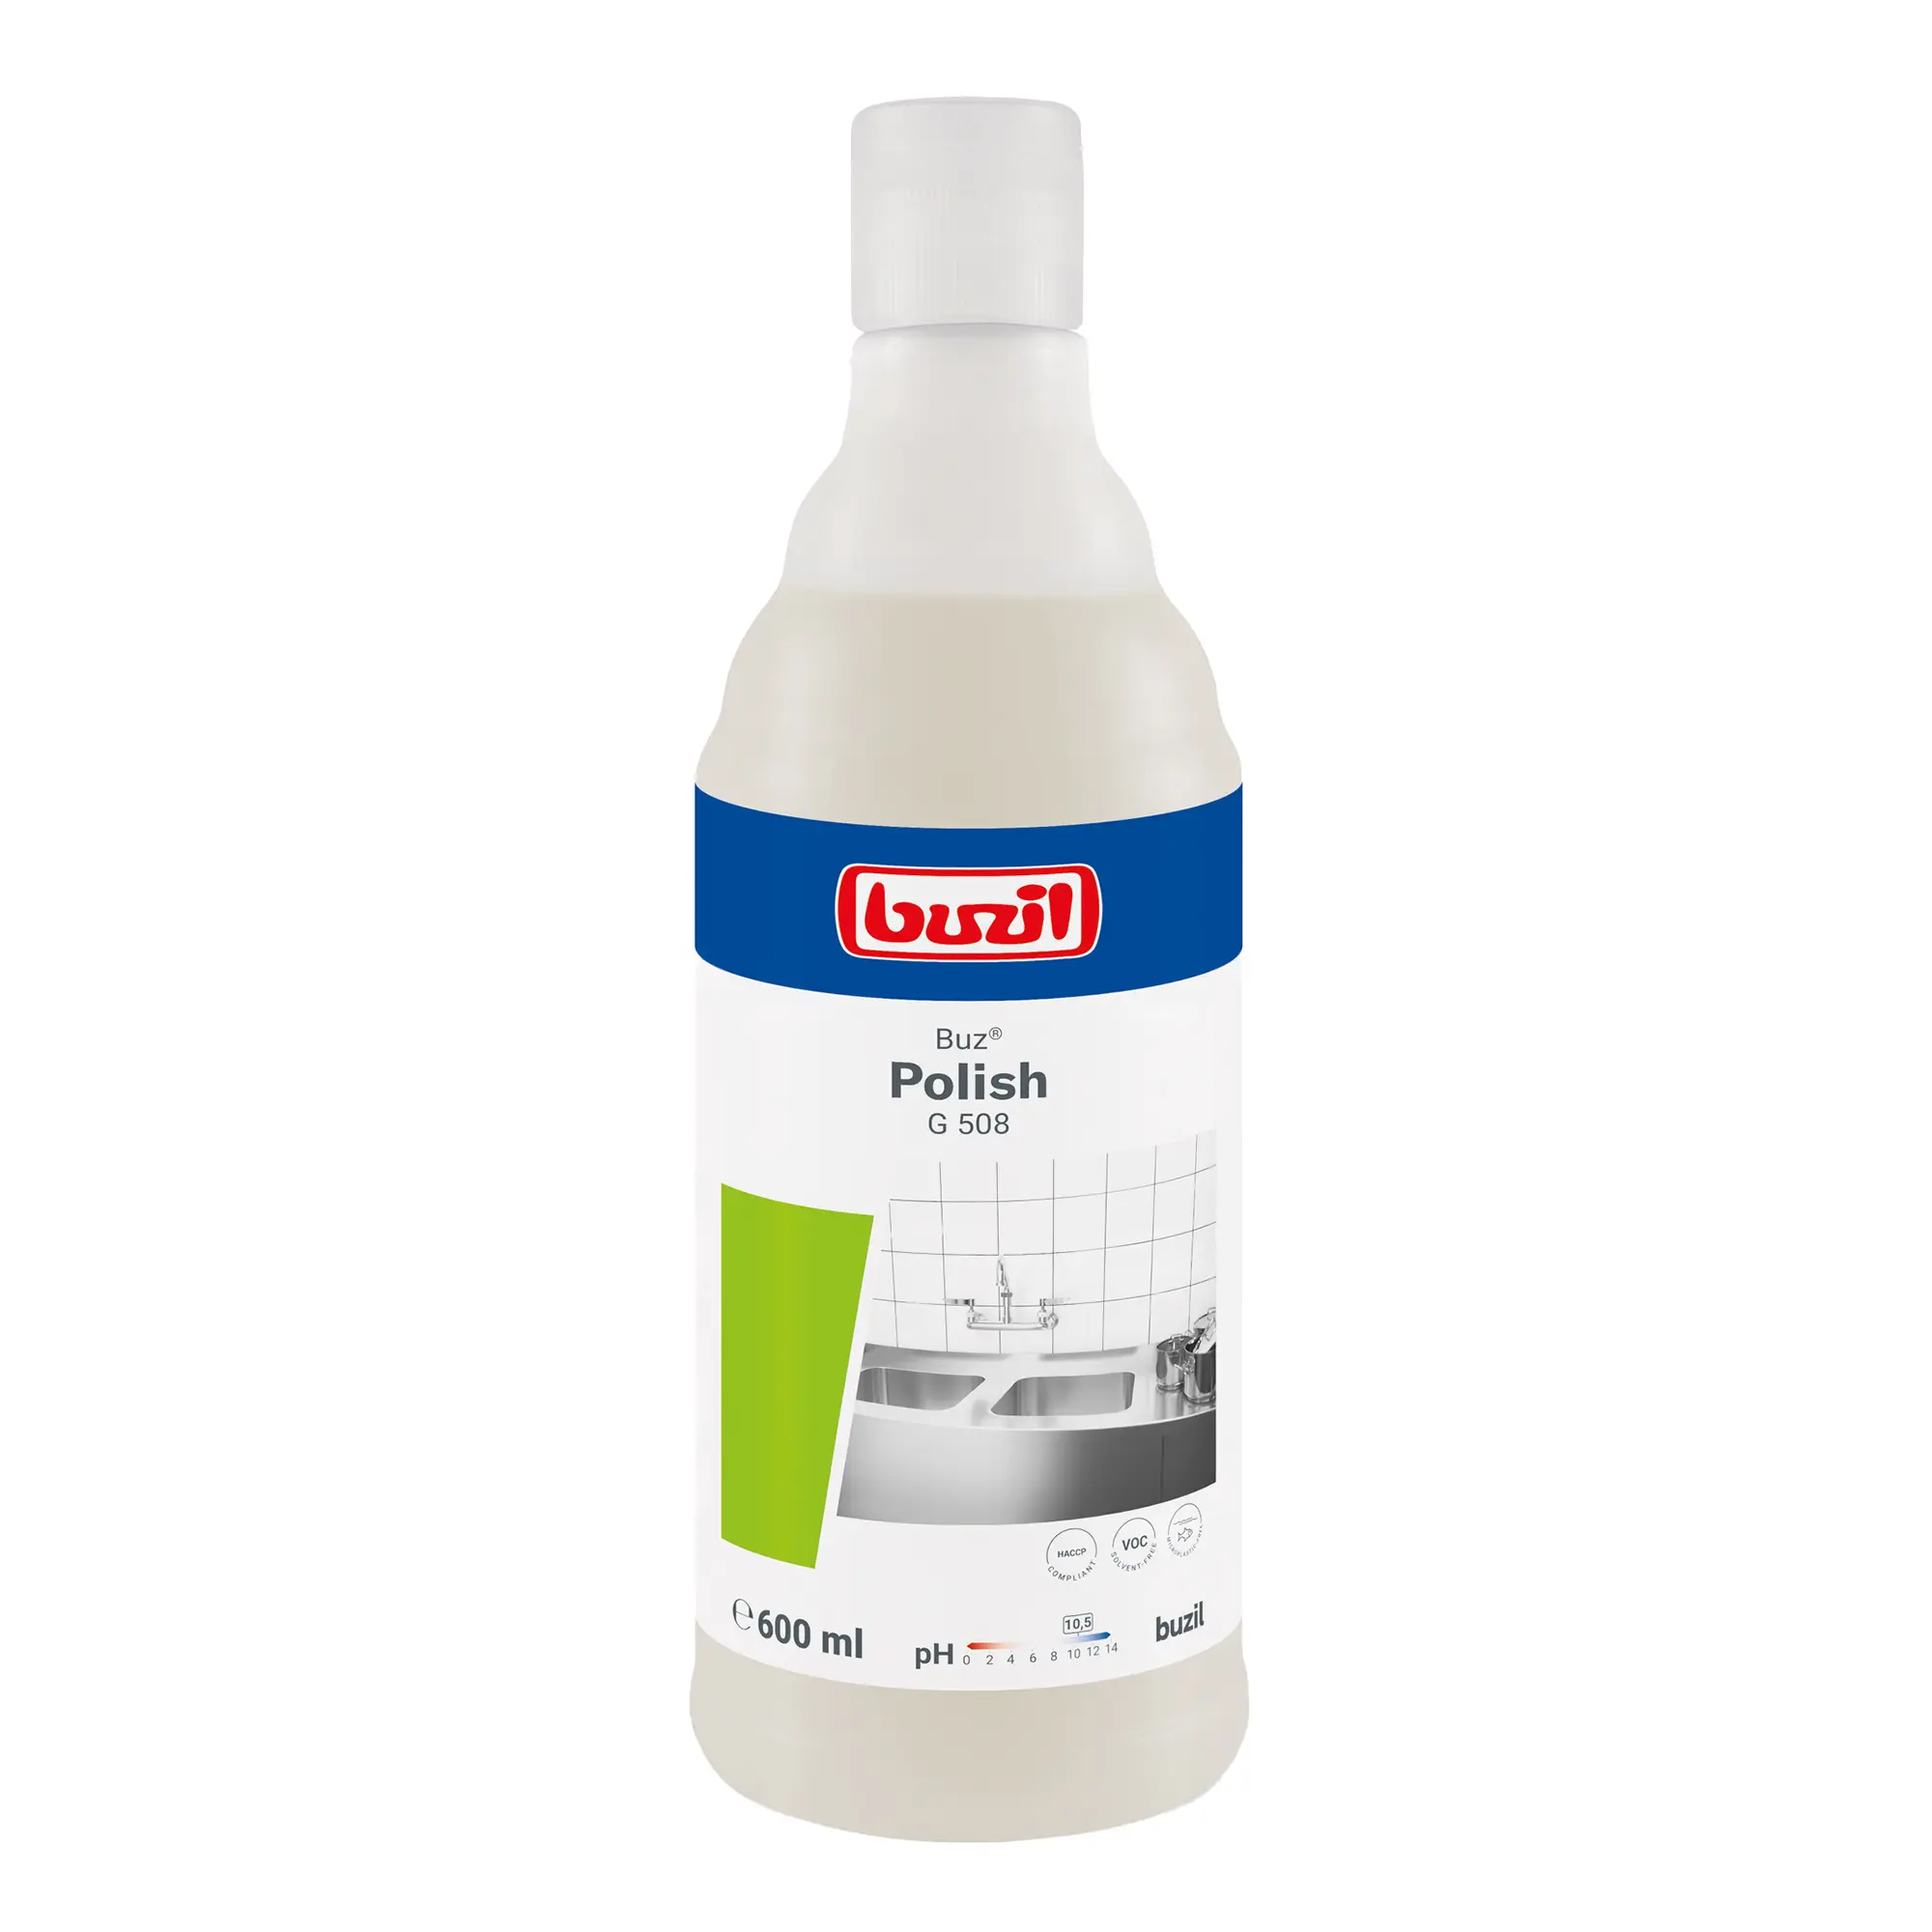 Buzil Buz Polish G508 gebrauchsfertige Scheuermilch